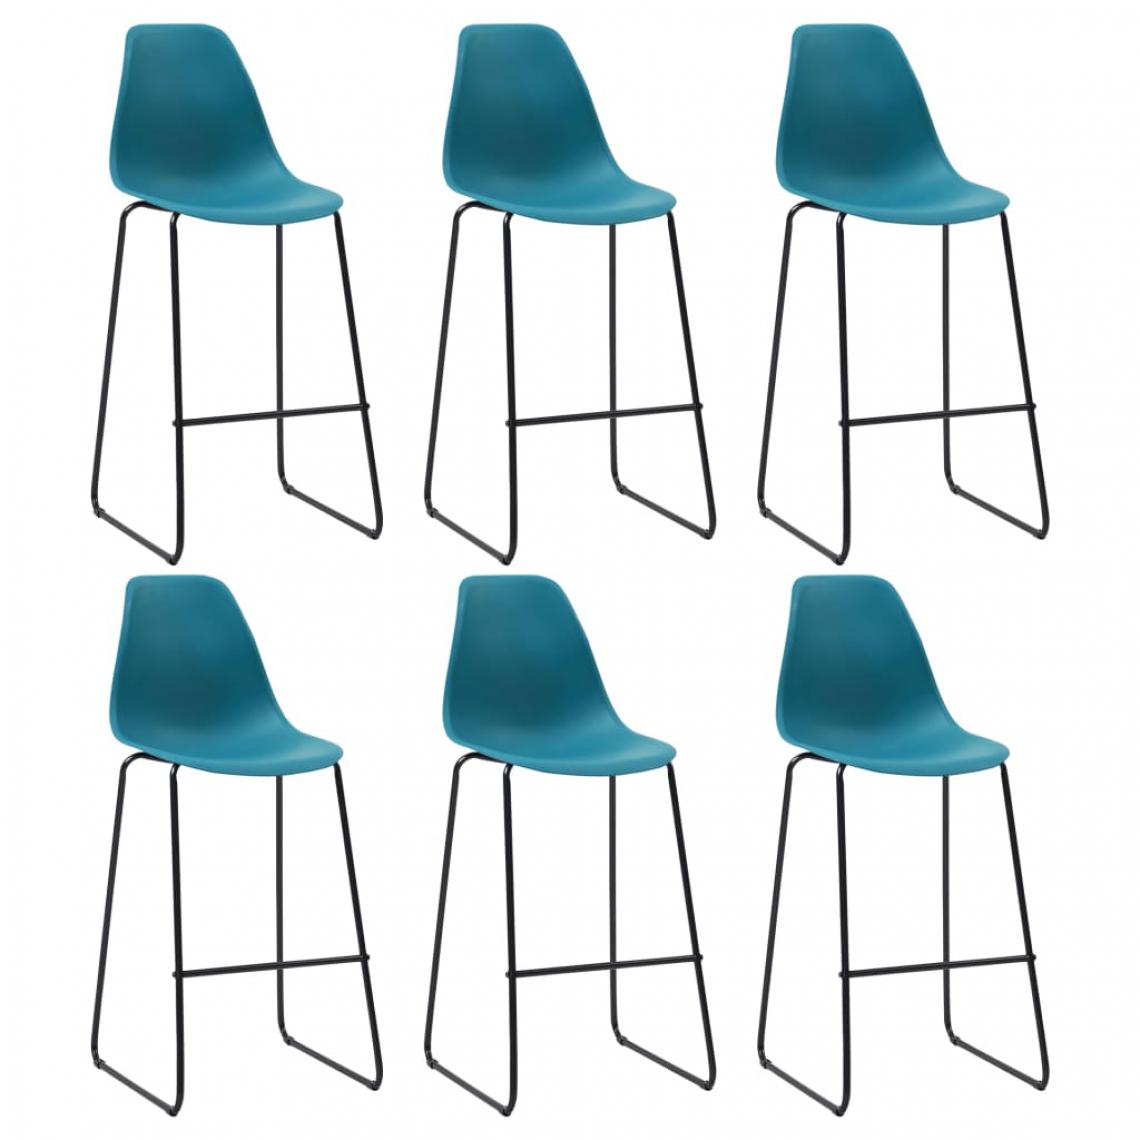 Chunhelife - Chaises de bar 6 pcs Turquoise Plastique - Tabourets